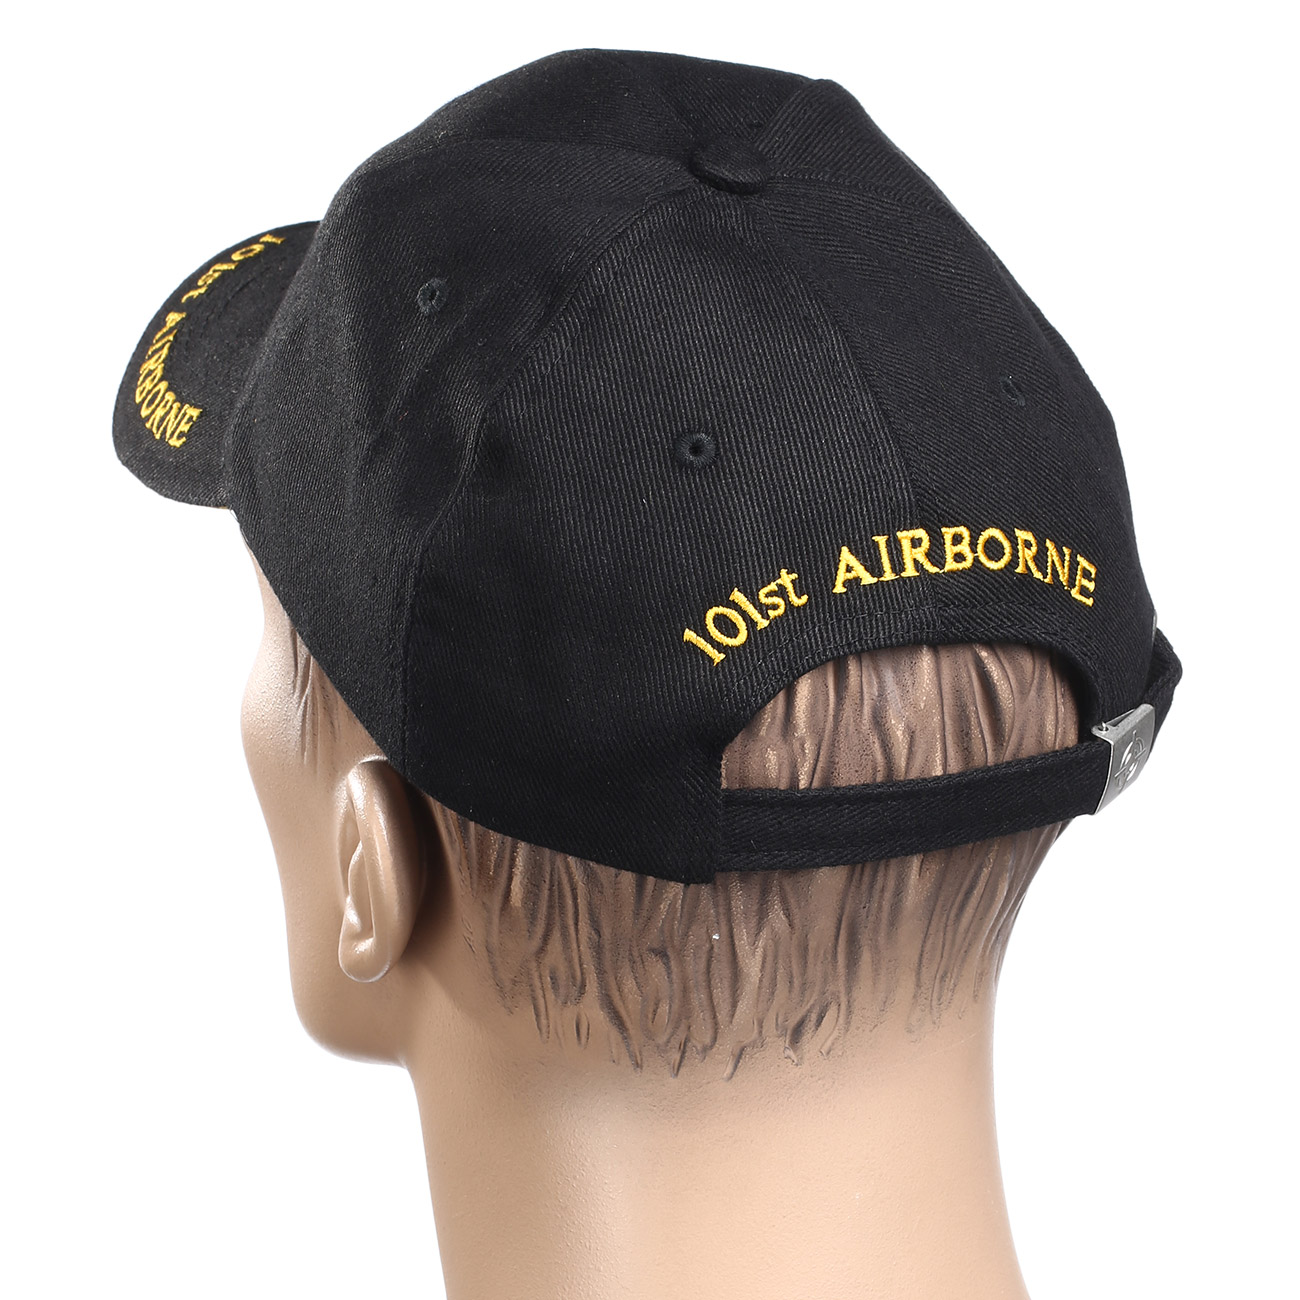 Fostex Baseball Cap 101st Airborne Army schwarz Bild 1